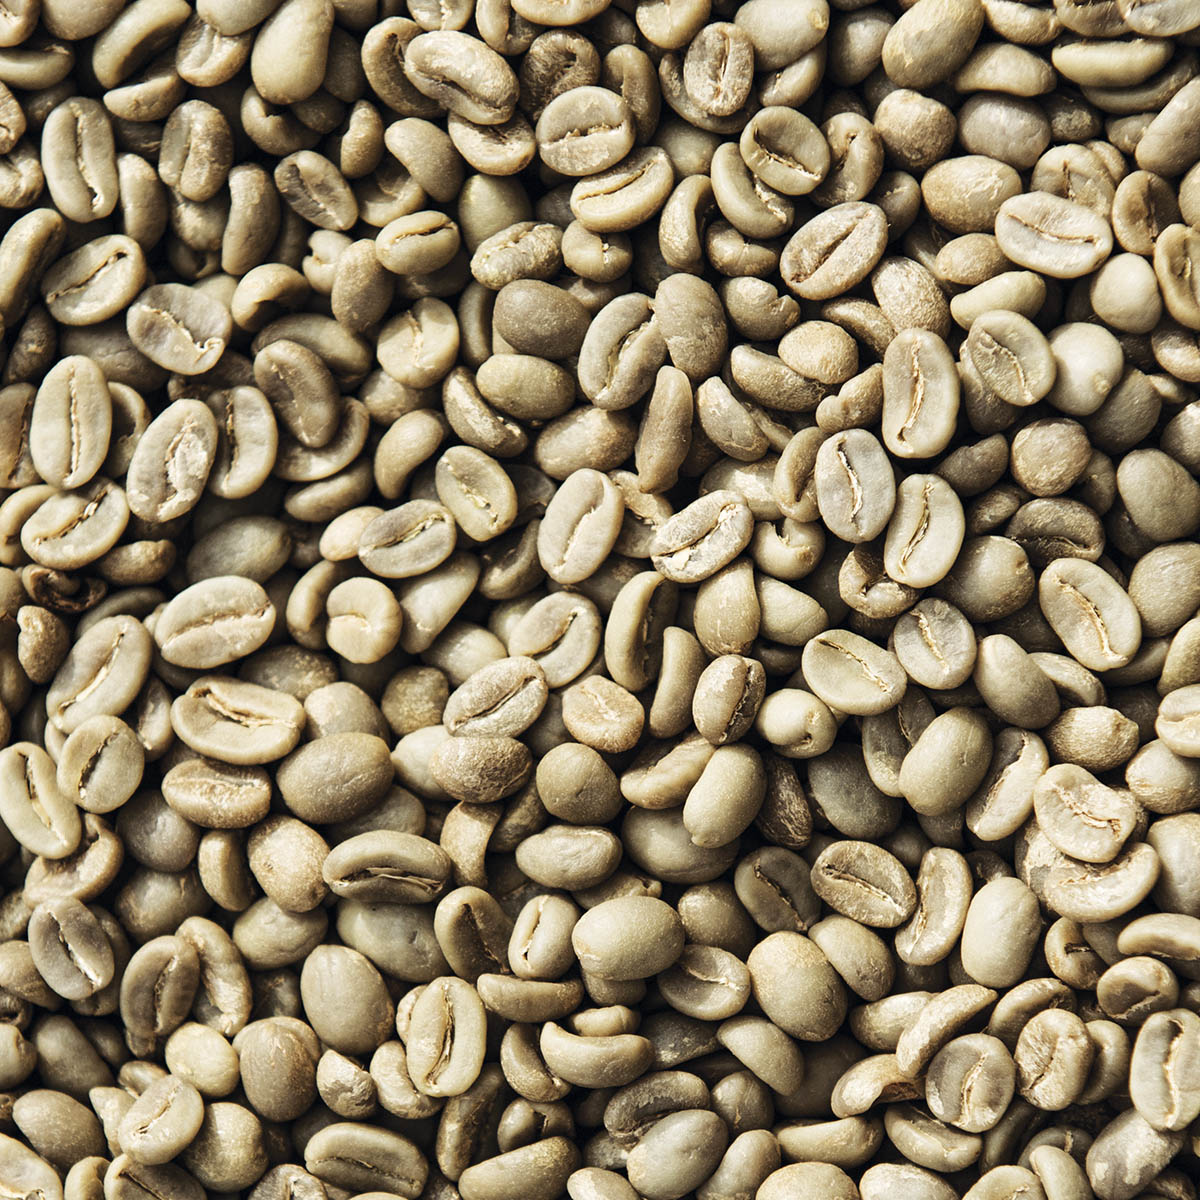 Coffee as a bean